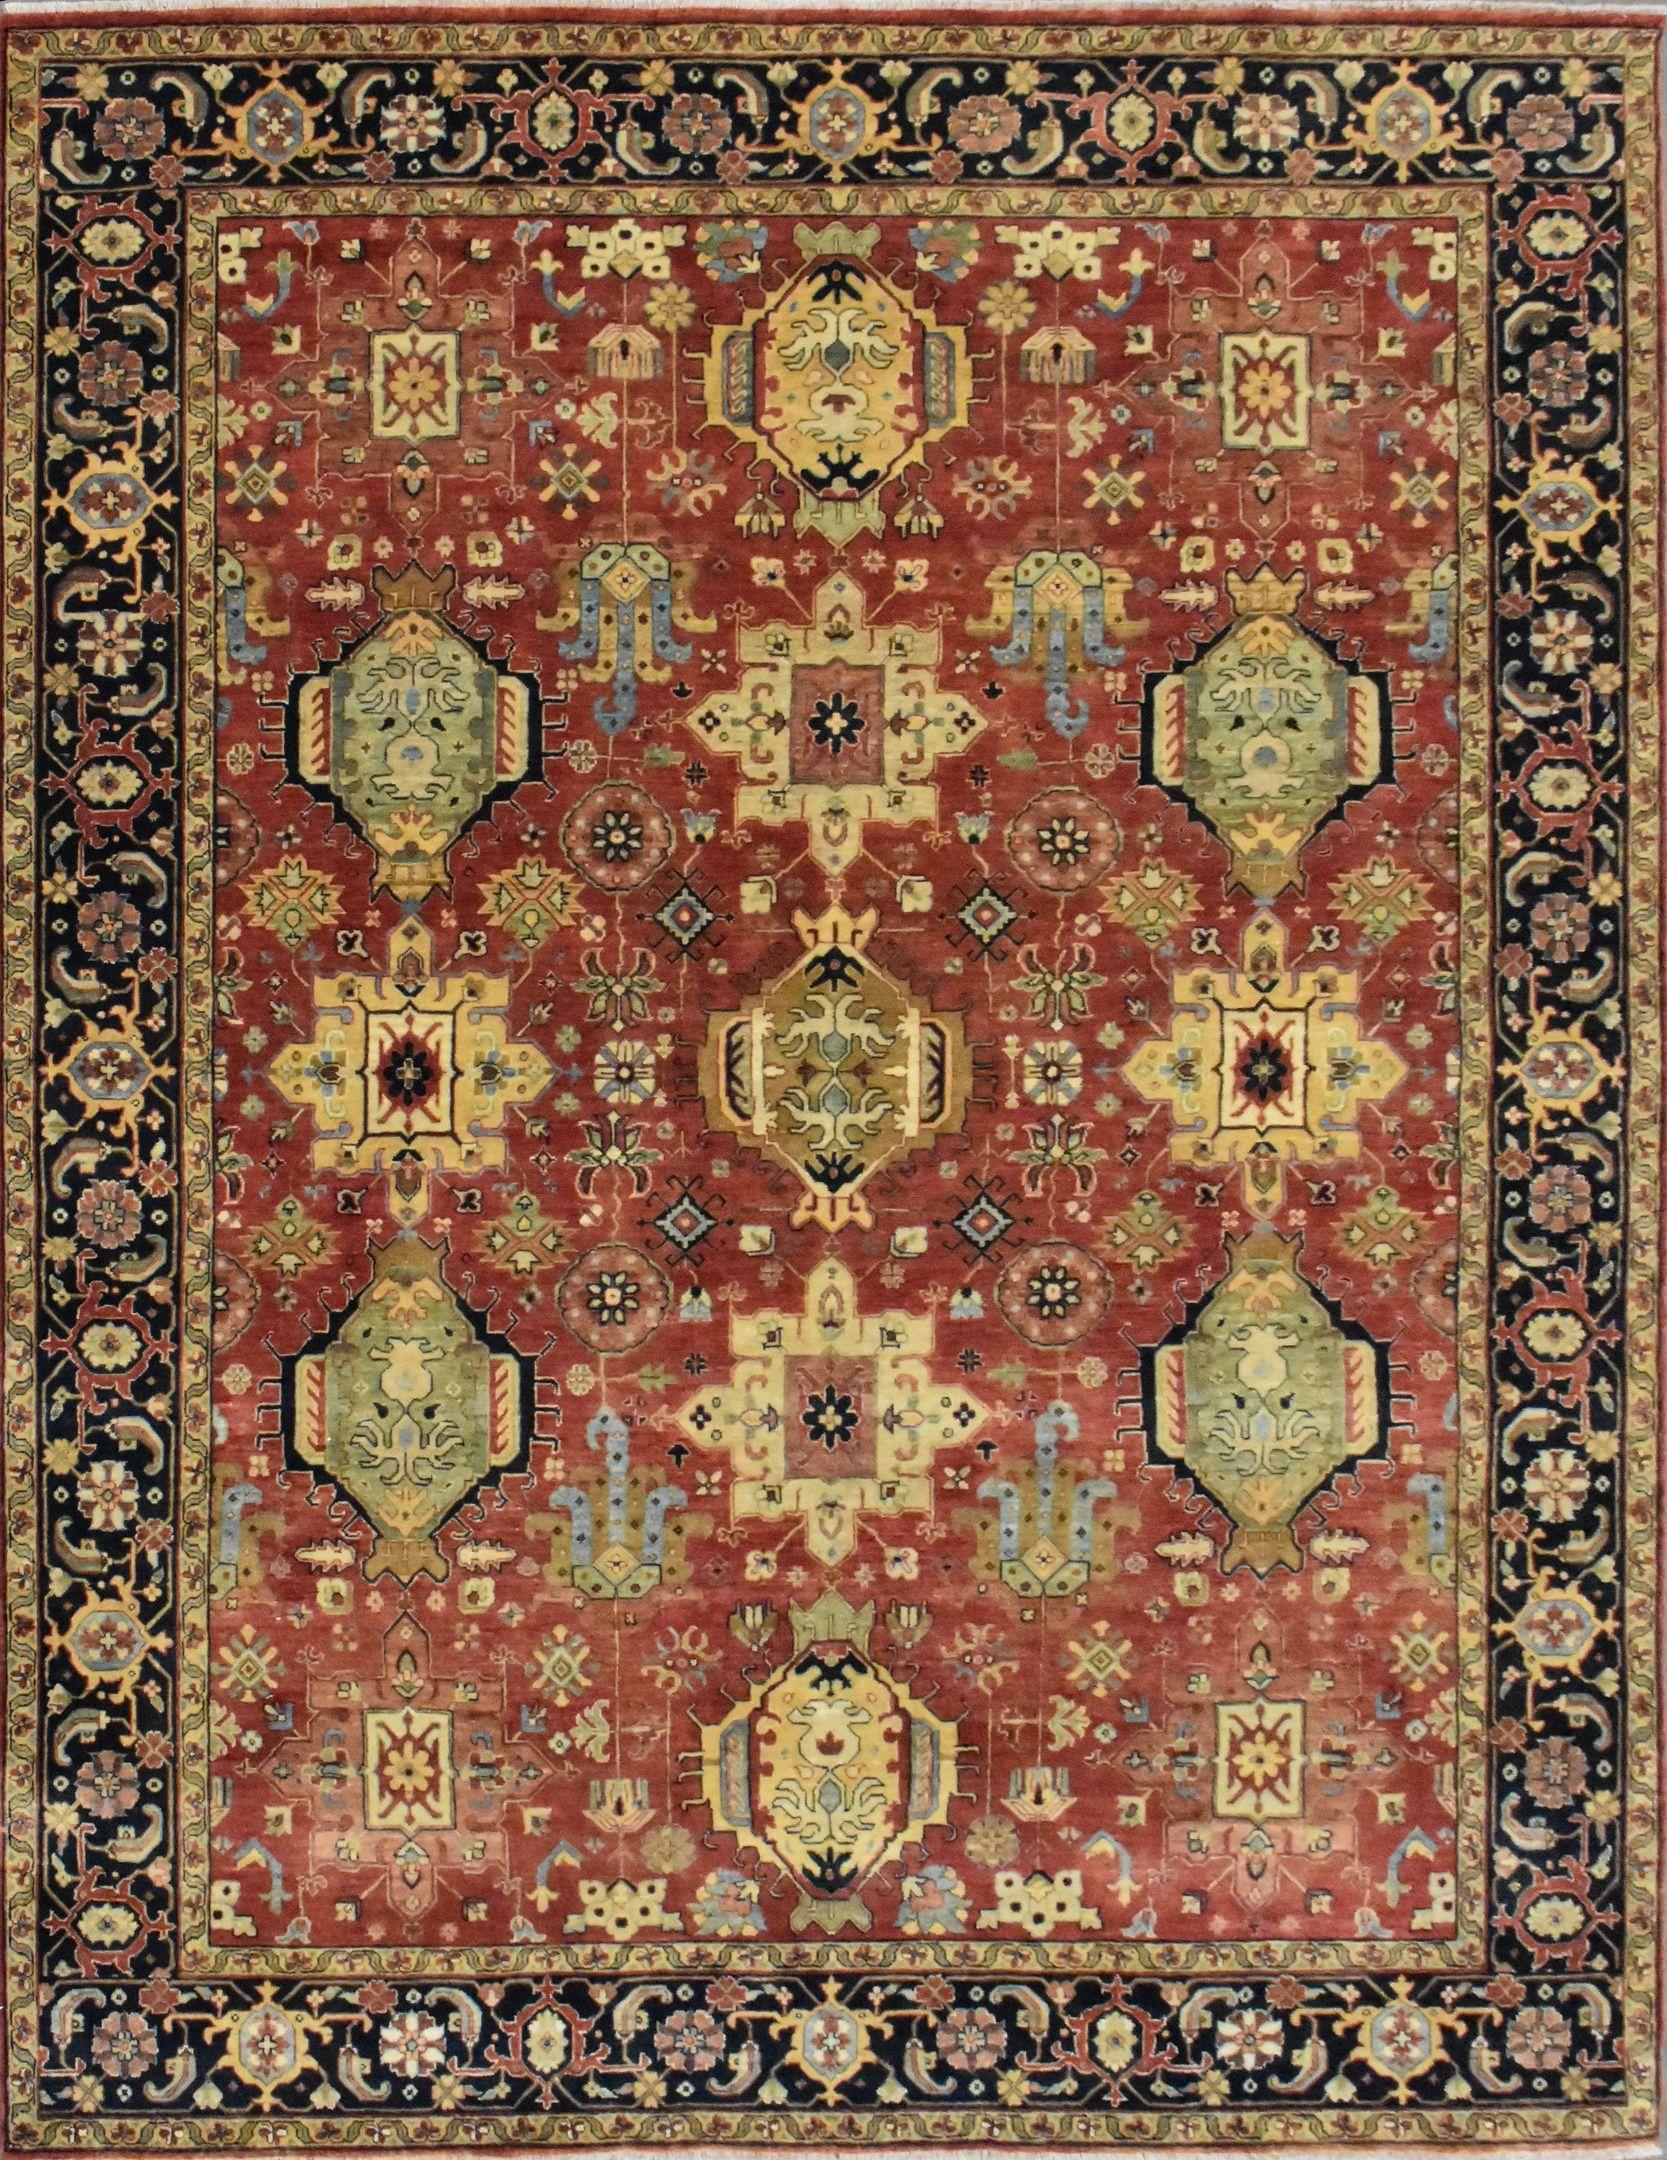 Joli tapis neuf avec un beau design persan et de belles couleurs, entièrement noué à la main avec du velours de laine sur une base de coton.